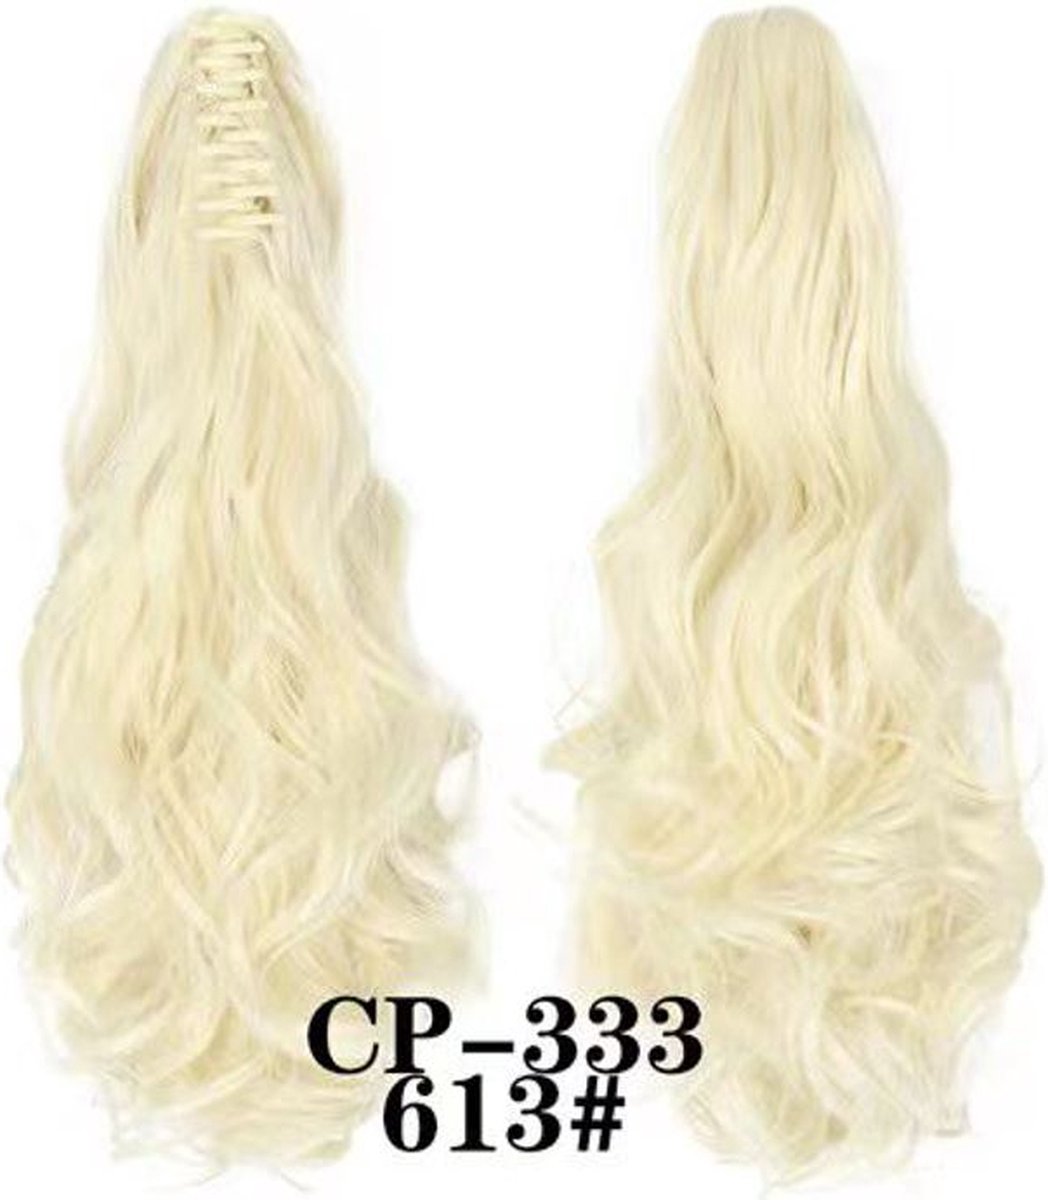 Brazilian Ponytail Blond - #613 - 55cm - Paardenstaart - Haarverlenging - Extensions - Wavy - 613# - Haarstuk - 22'' - 22 inch - Blond